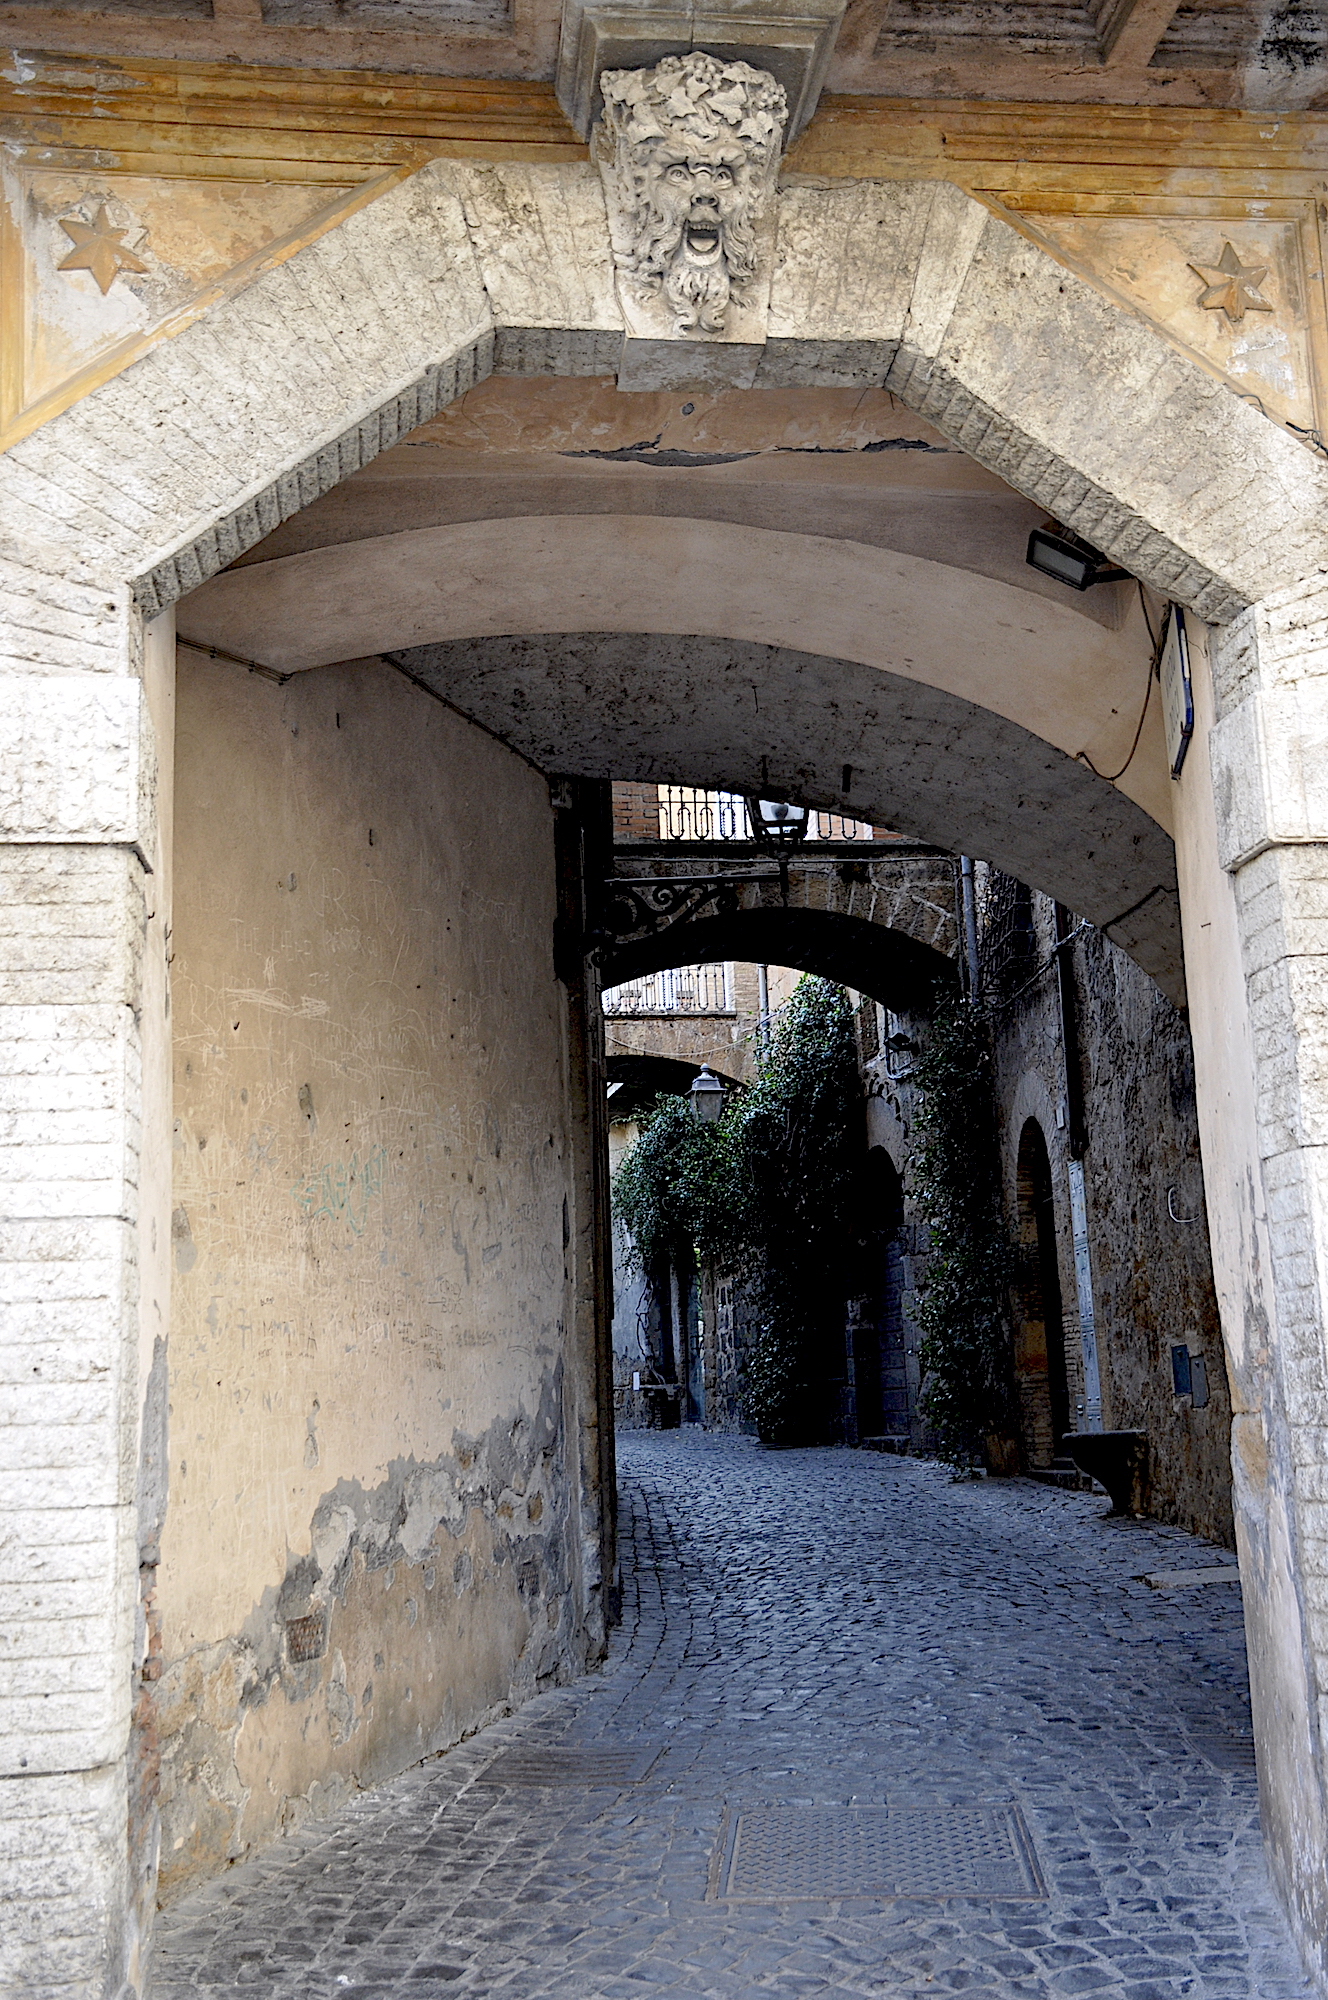 Street scene Orvieto Italy in Umbria